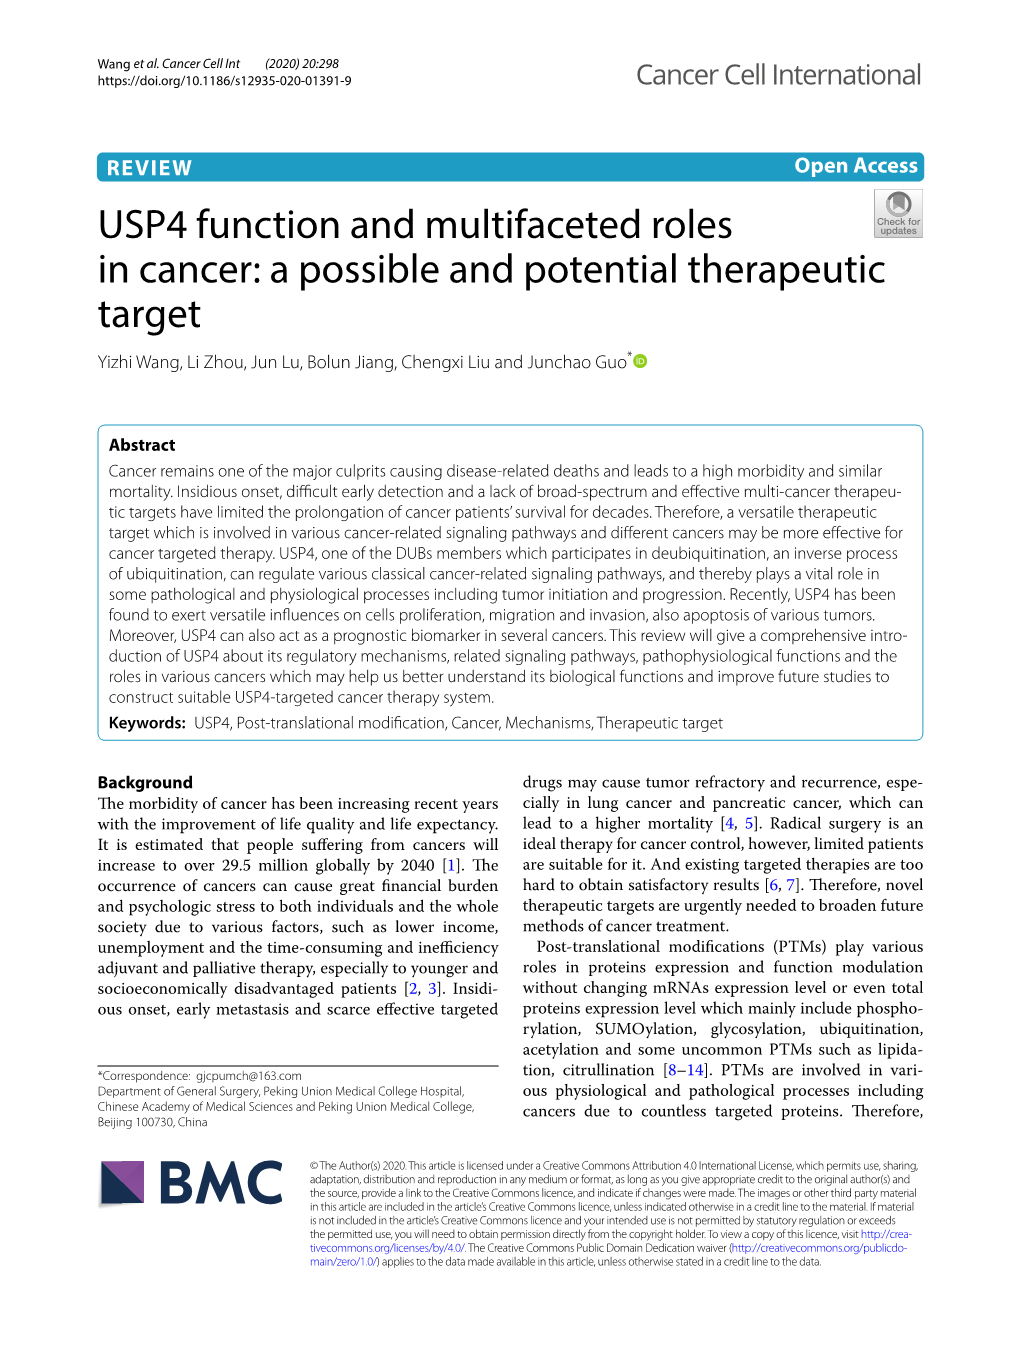 USP4 Function and Multifaceted Roles in Cancer: a Possible and Potential Therapeutic Target Yizhi Wang, Li Zhou, Jun Lu, Bolun Jiang, Chengxi Liu and Junchao Guo*